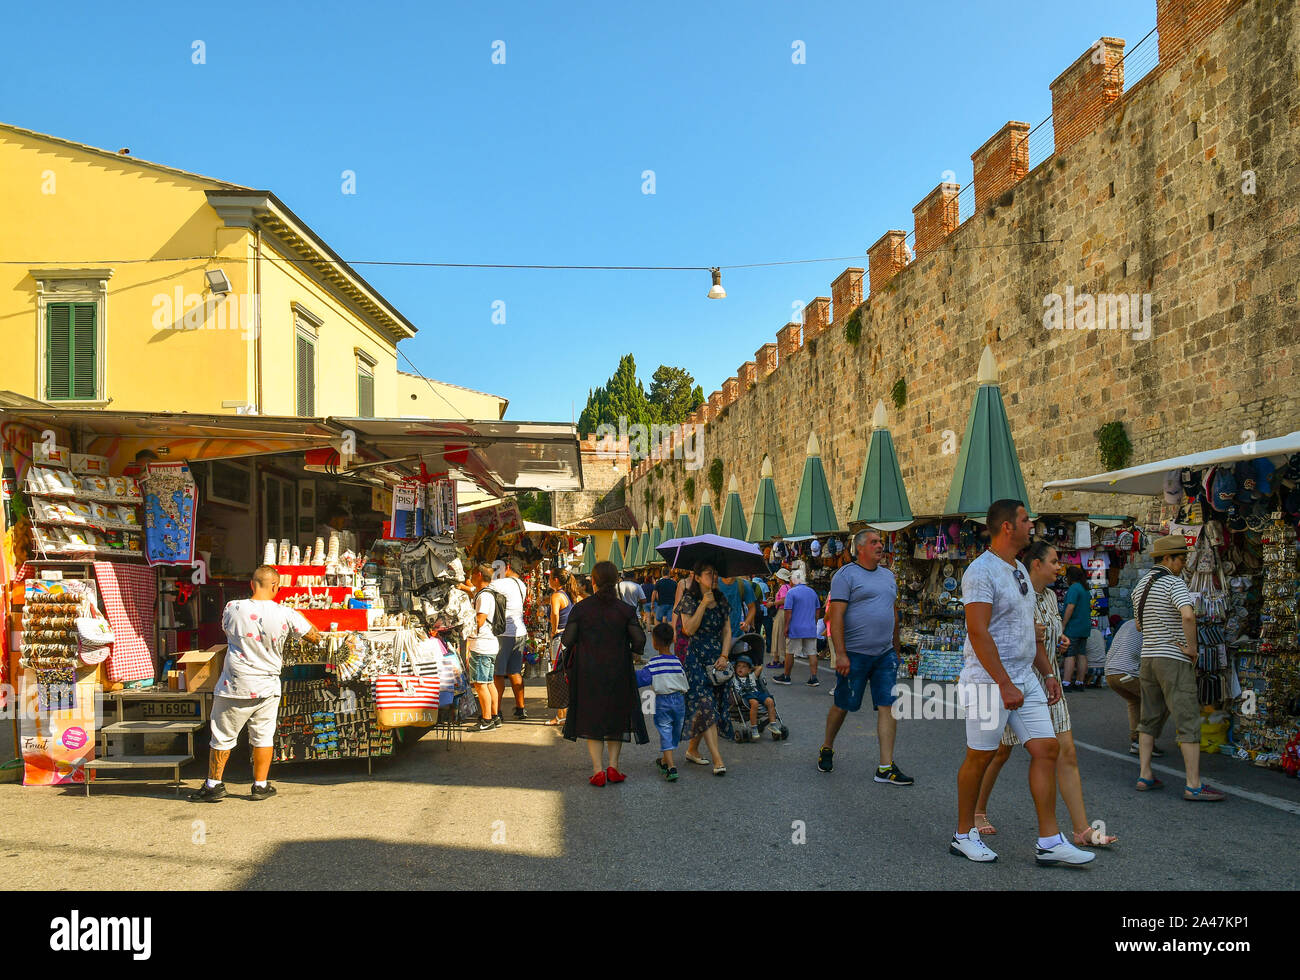 Vista sulla strada della famosa destinazione turistica con persone che acquistano presso bancarelle di souvenir e le vecchie mura della città in una soleggiata giornata estiva, Pisa, Toscana, Italia Foto Stock